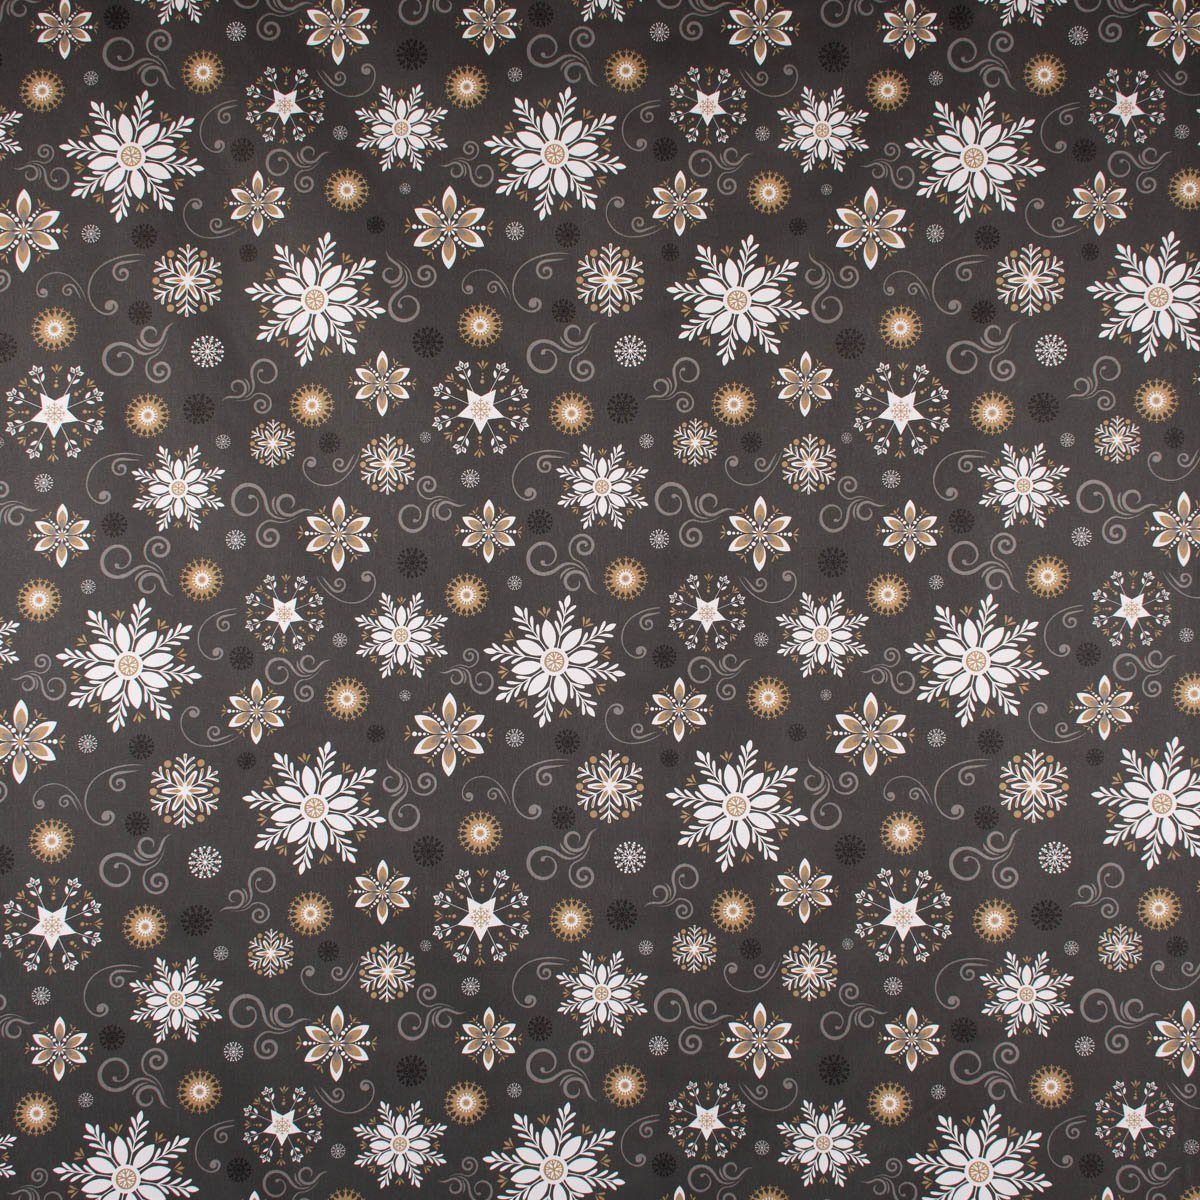 Schneekristalle anthrazit div. Tischdecke handmade Liesse Größen, SCHÖNER Weihnachtstischdecke LEBEN.